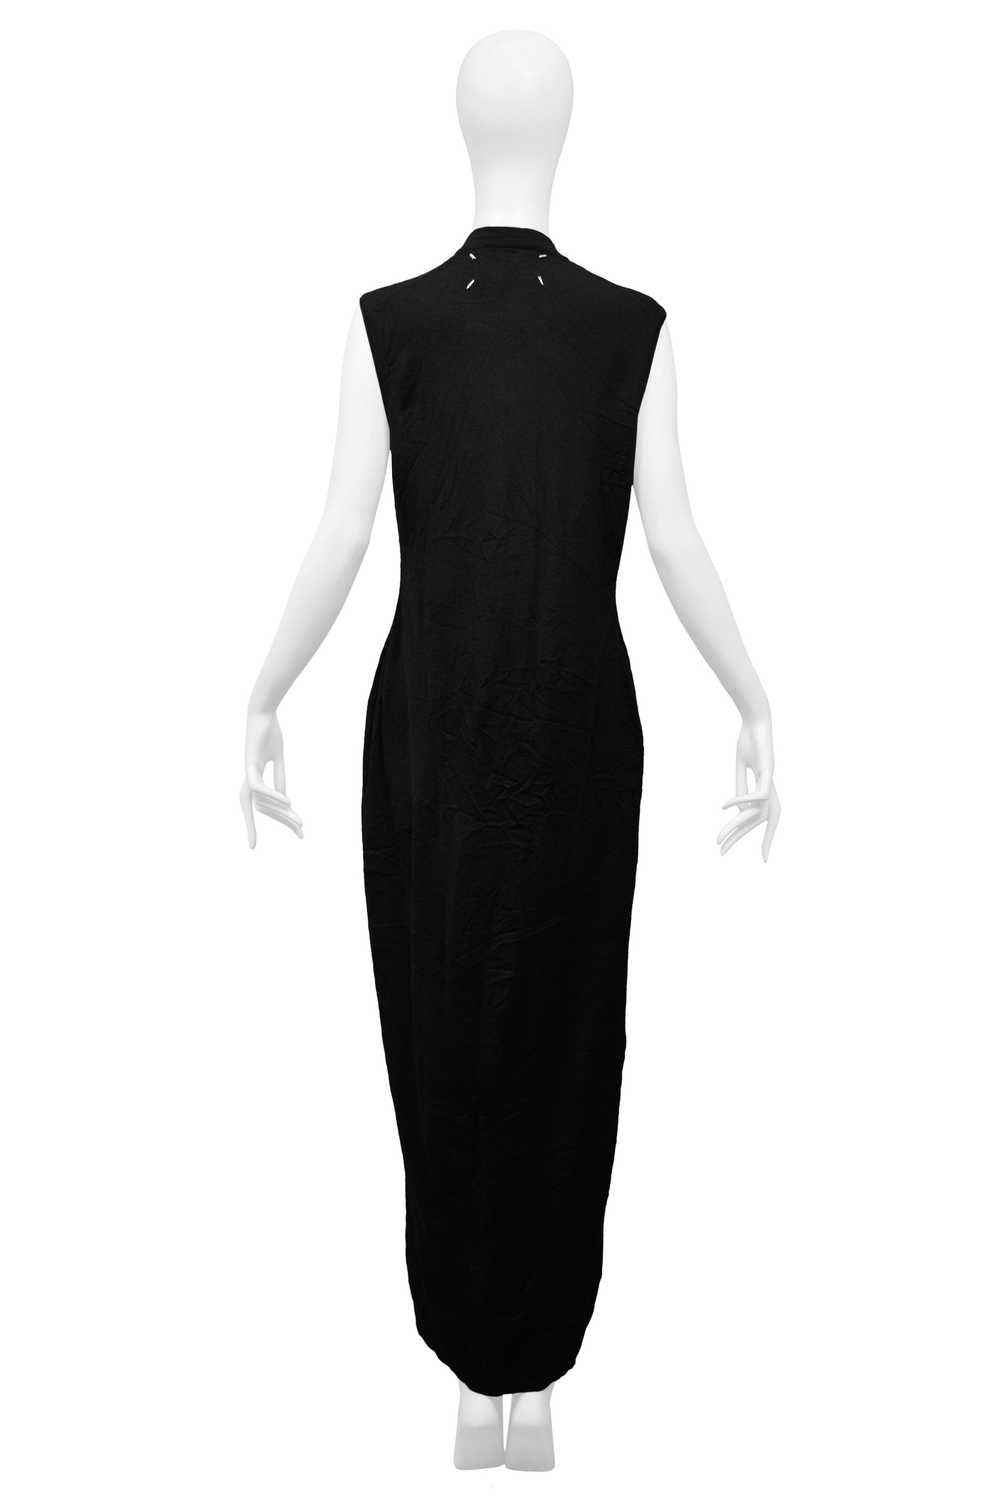 MARGIELA BLACK OVERSIZED SWEATER DRESS - image 2